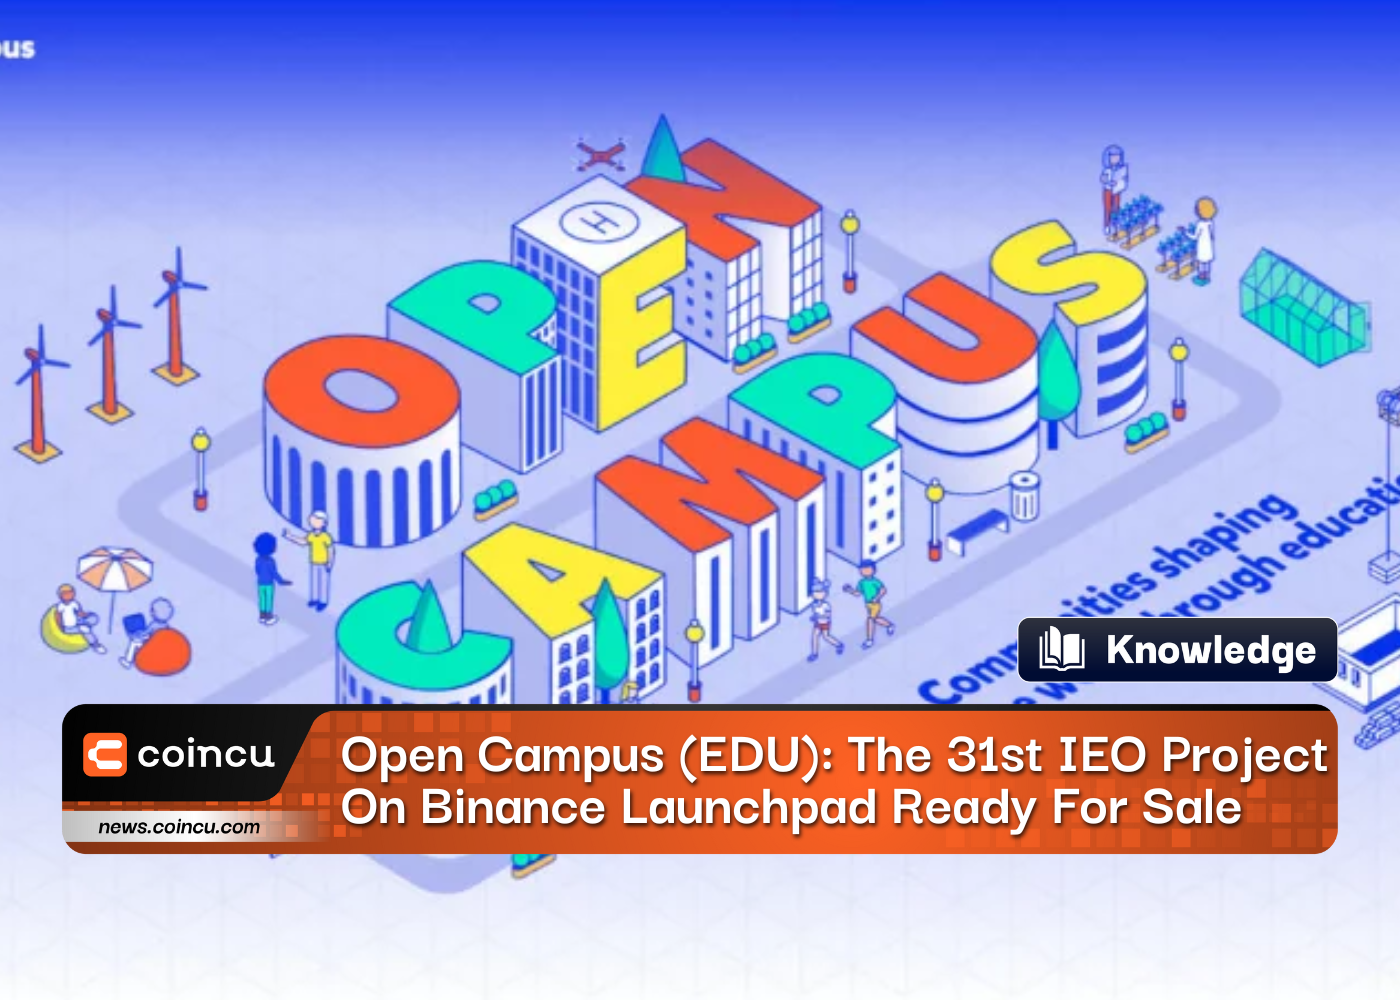 开放校园 (EDU)：币安 Launchpad 上的第 31 个 IEO 项目准备出售